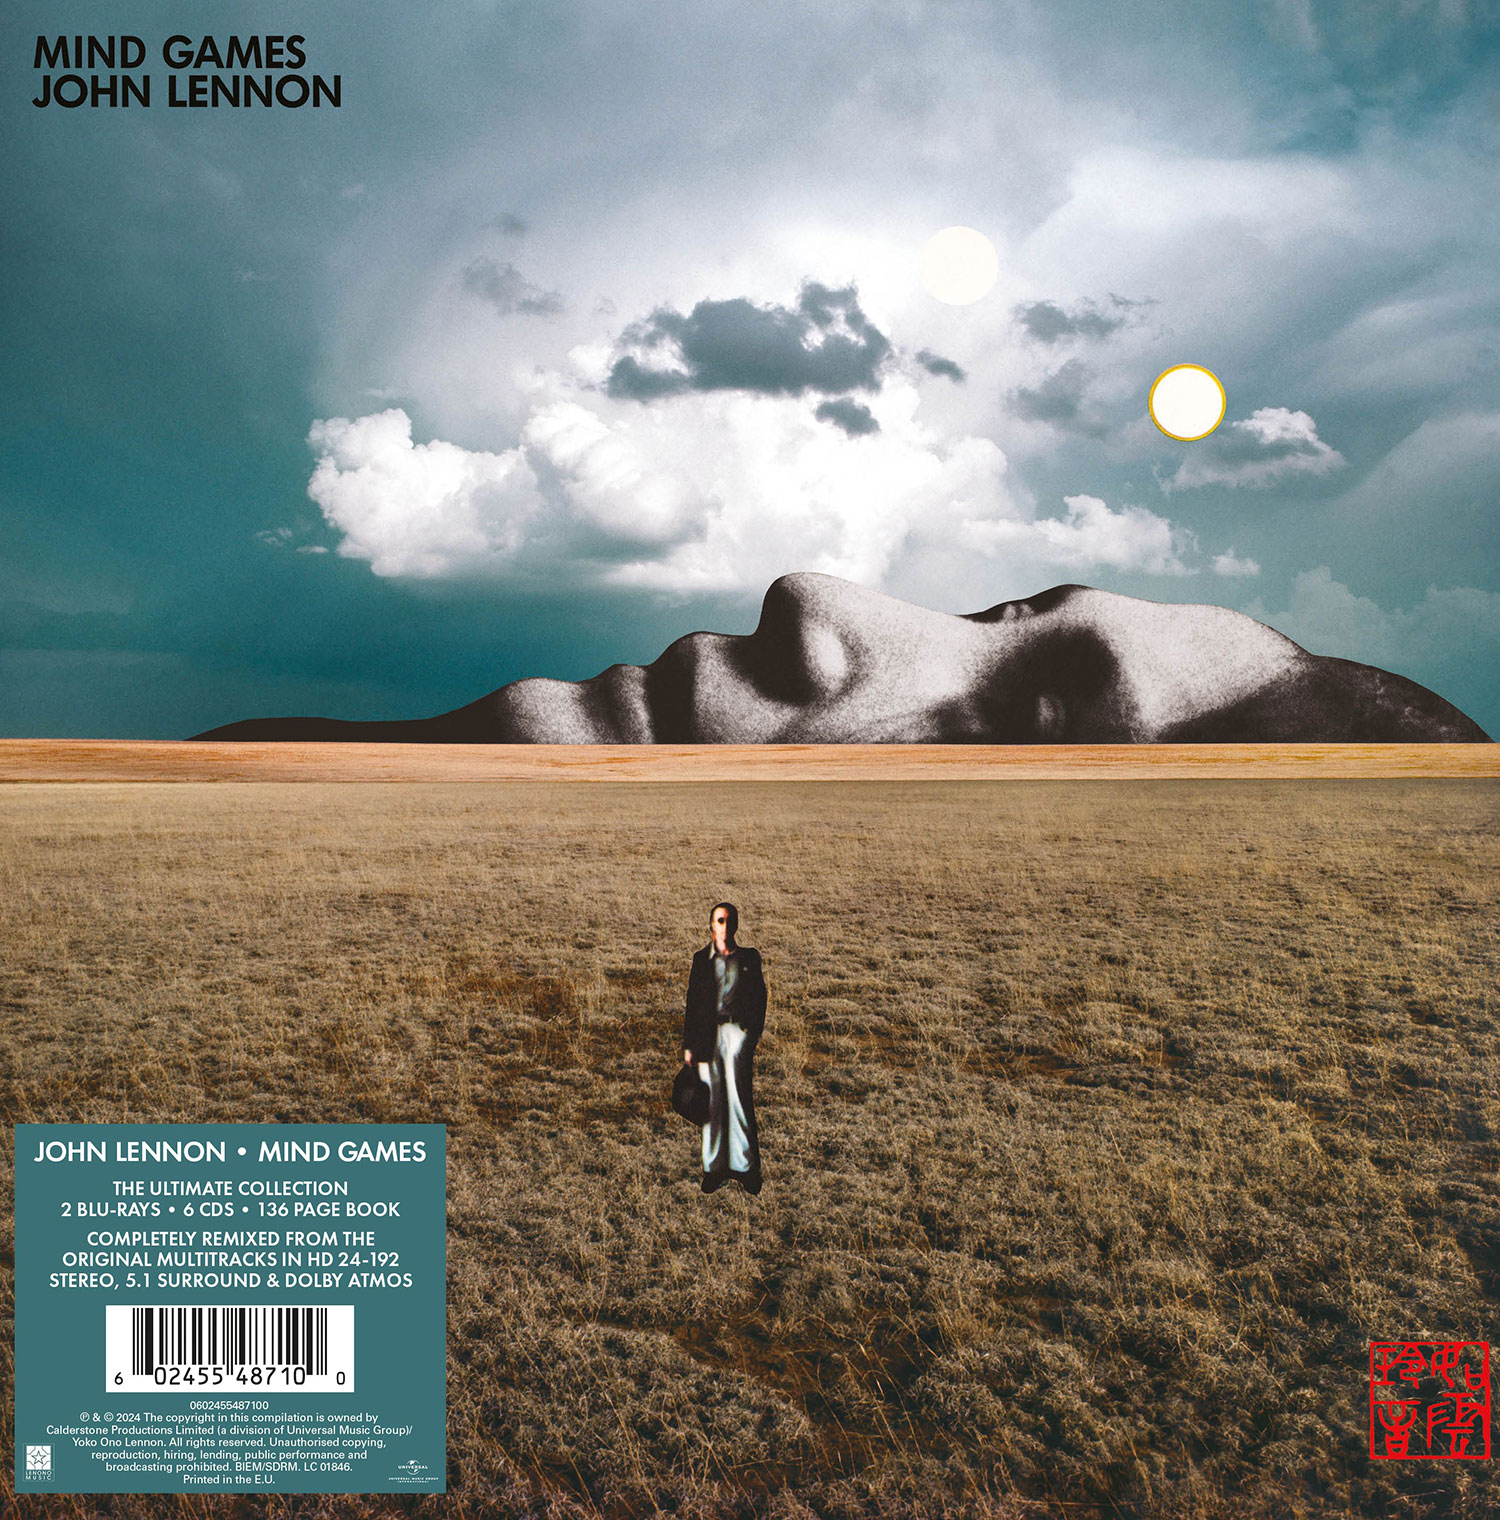 John Lennon / Mind Games deluxe edition reissue